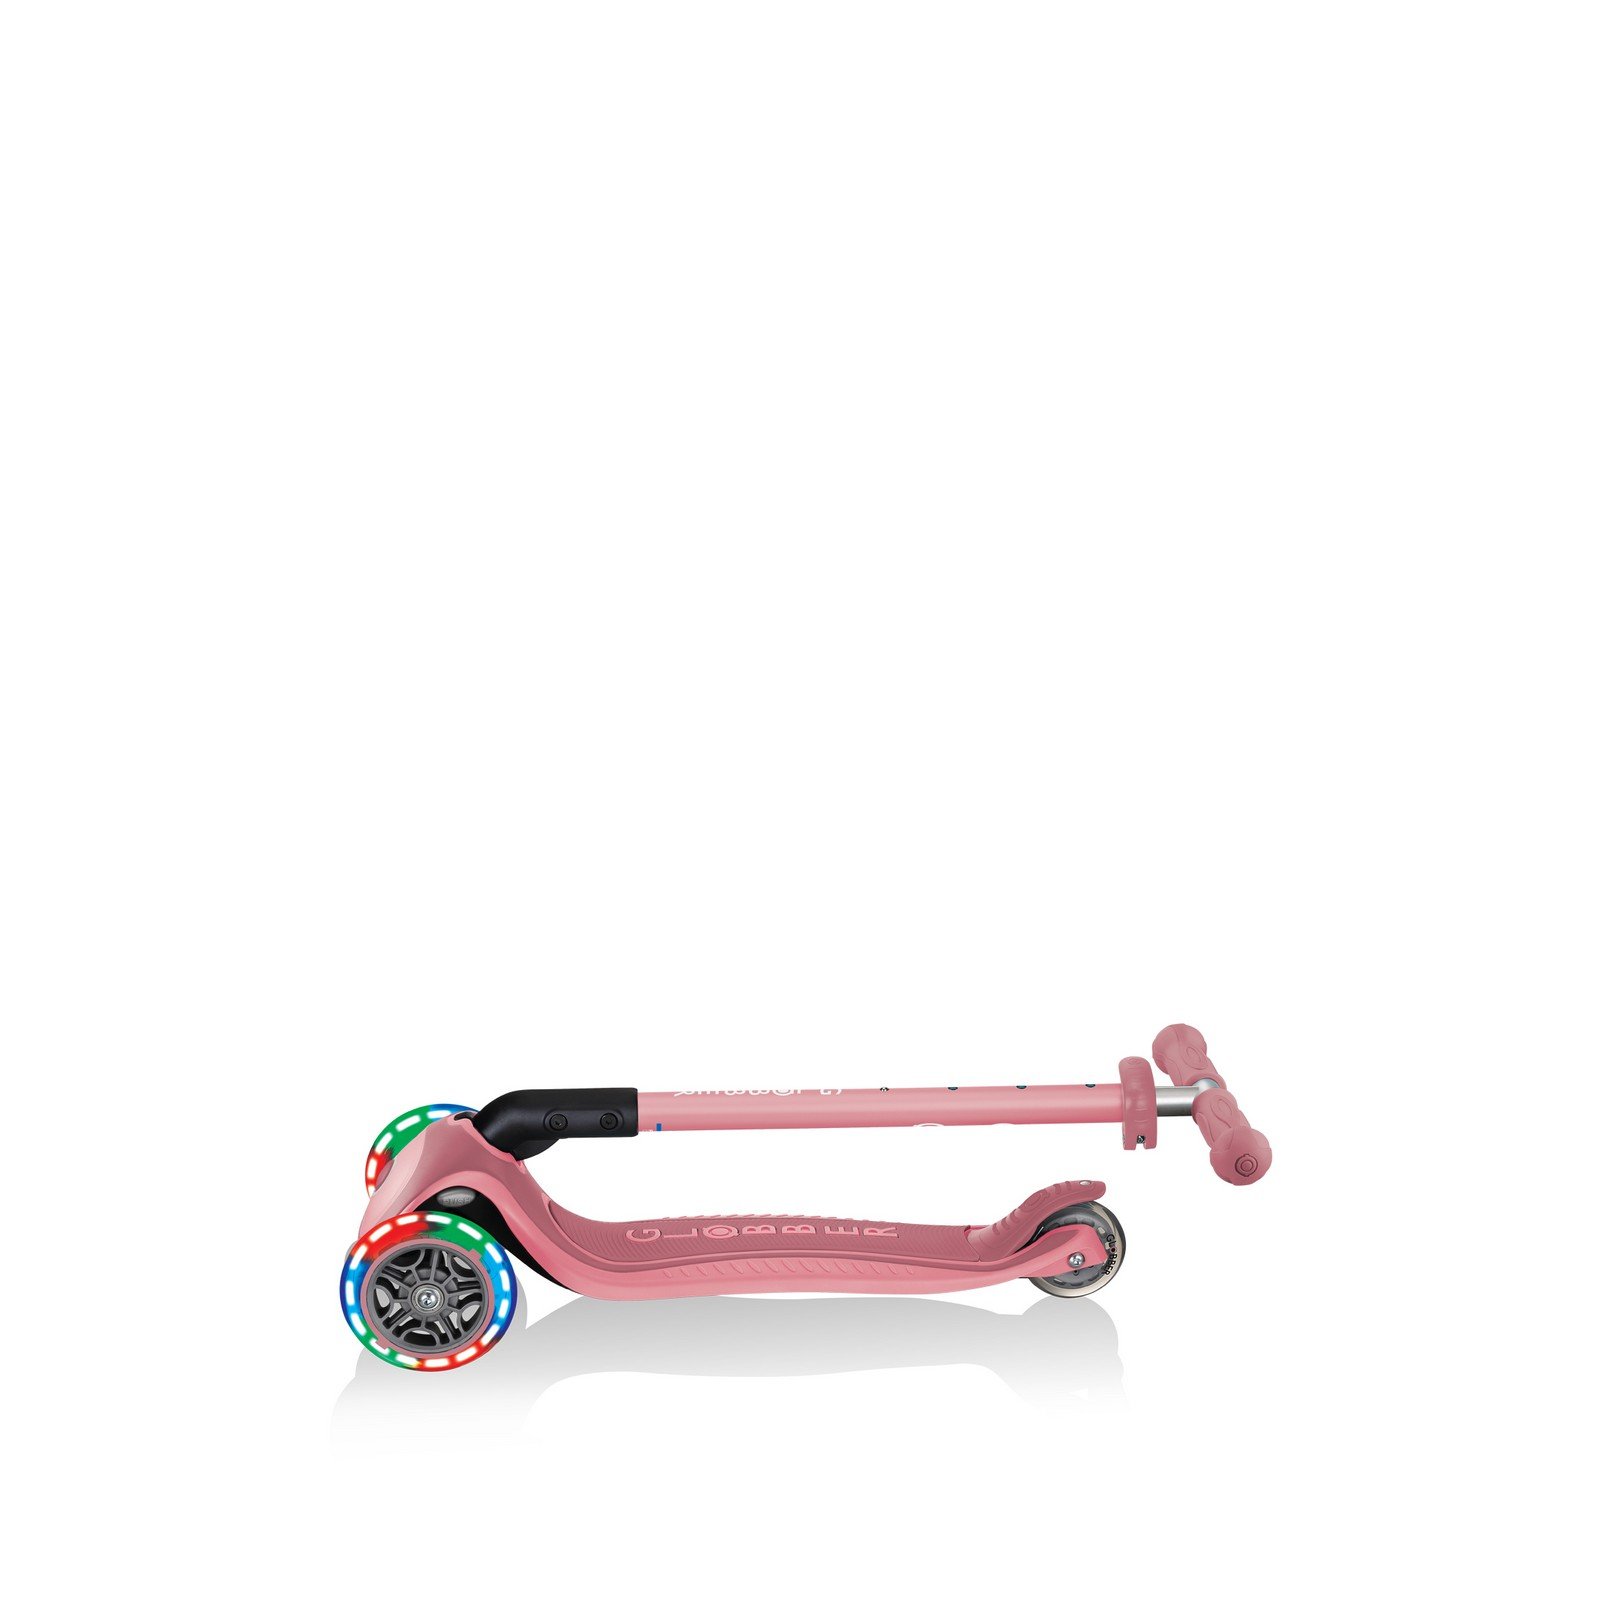 Самокат Globber Primo foldable plus lights, колеса з підсвічуванням, пастельно-рожевий (439-210) - фото 10